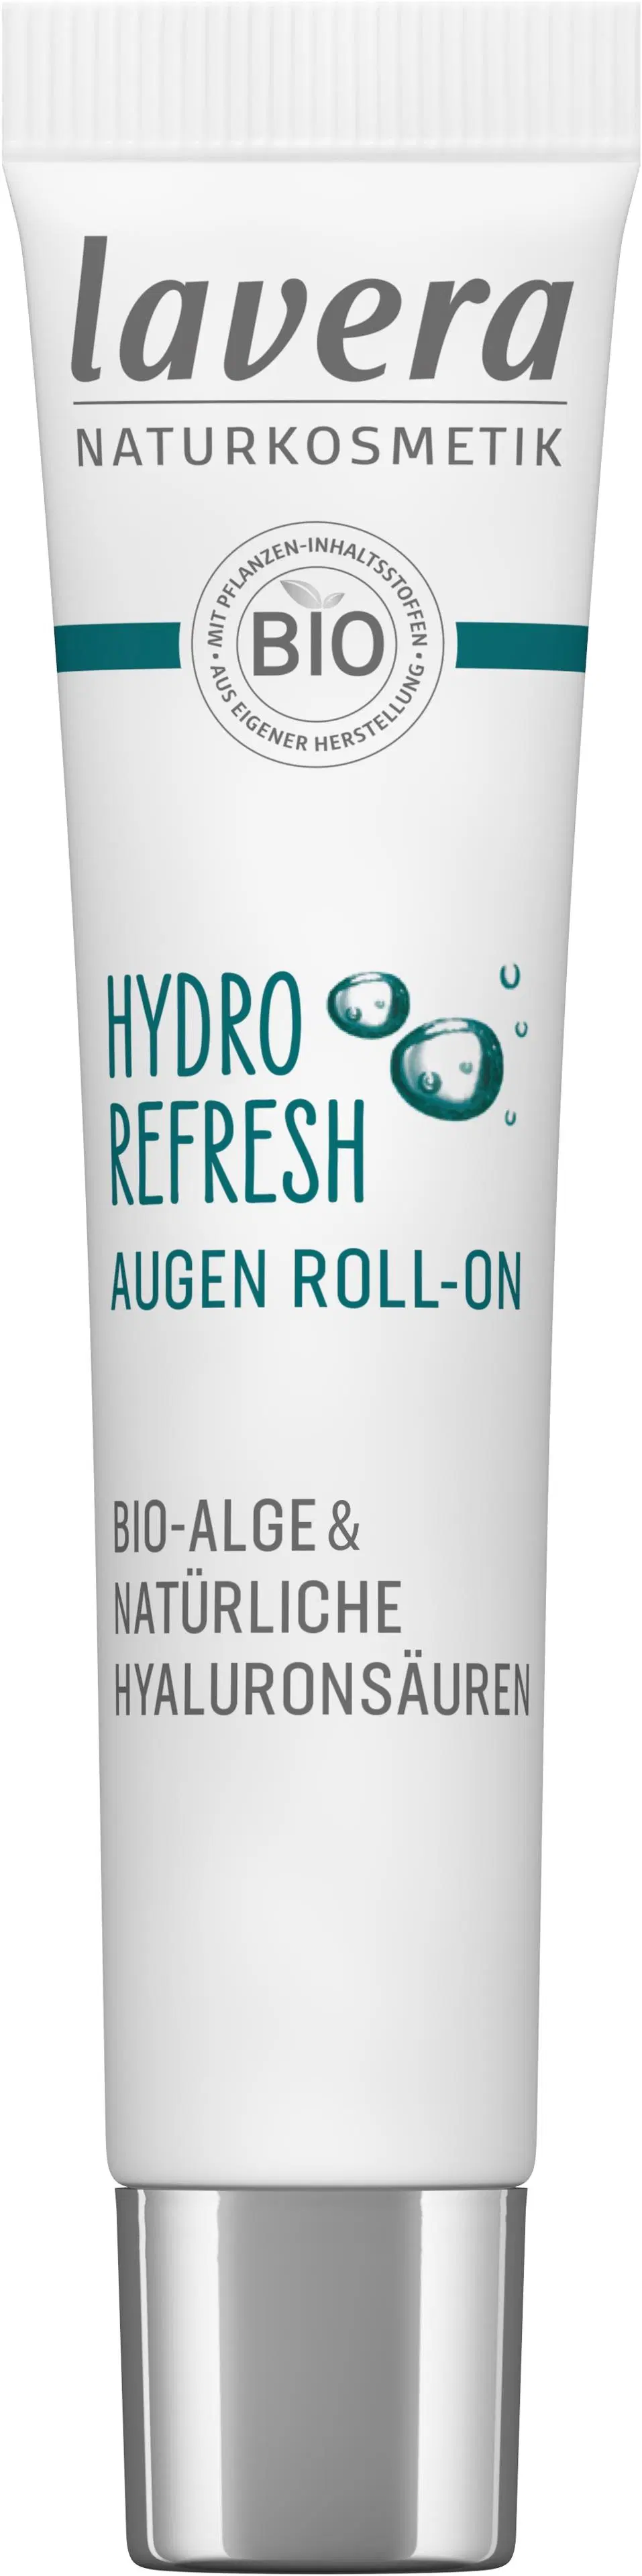 lavera Hydro Refresh Eye Roll-on 15ml